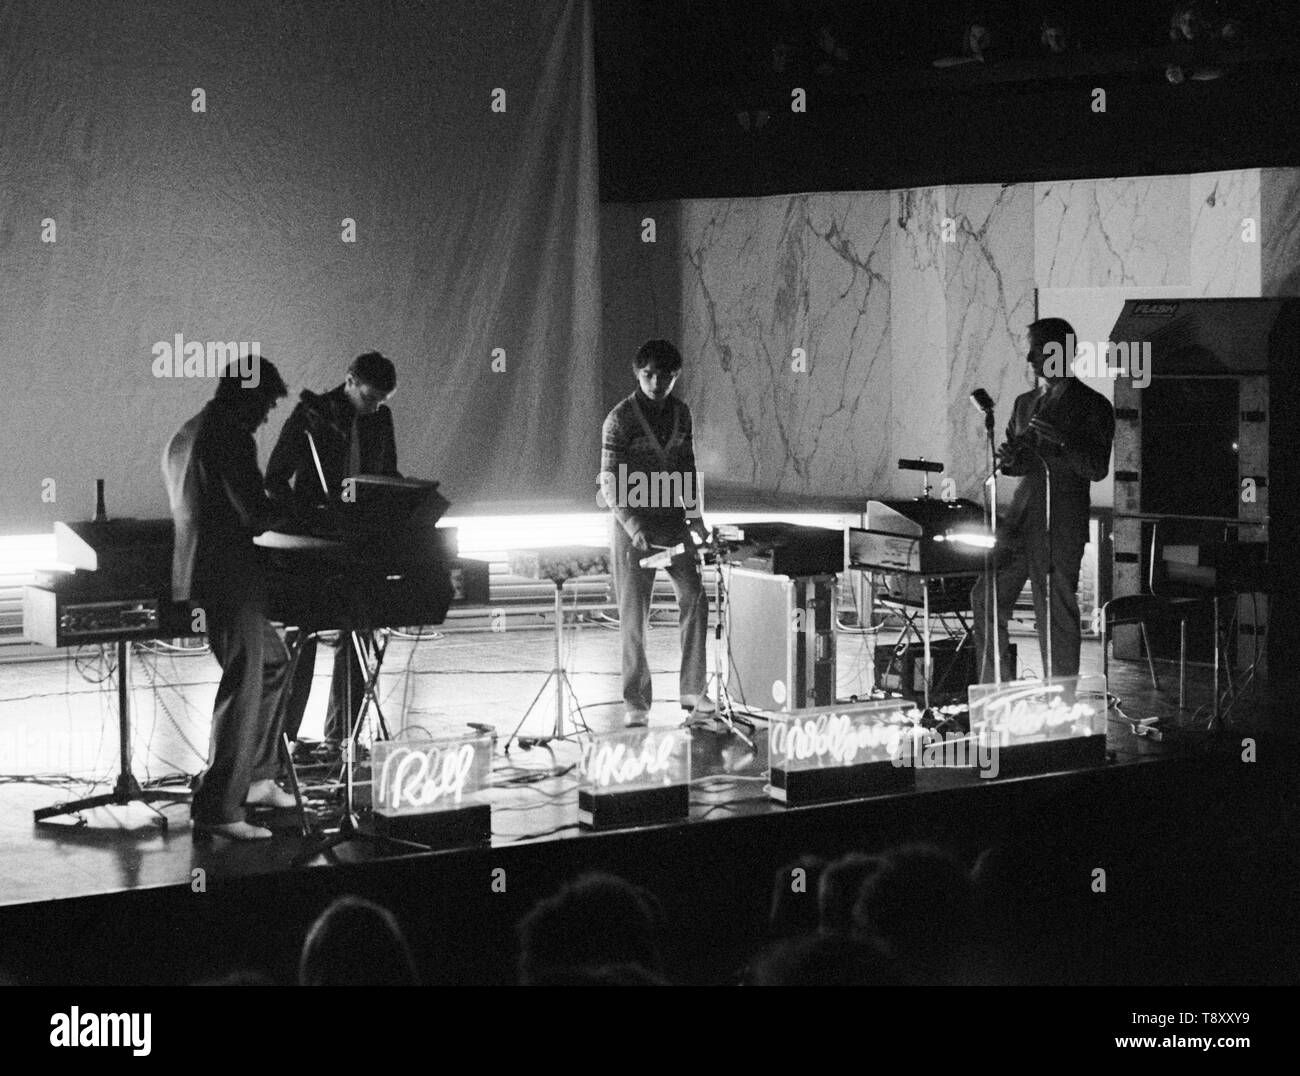 ROTTERDAM, Pays-Bas - le 21 mars : Kraftwerk posés à Rotterdam le 21 mars 1976 L-R Florian Schneider, Karl Bartos, Wolfgang Flur, Ralf Hutter (photo de Gijsbert Hanekroot) Banque D'Images